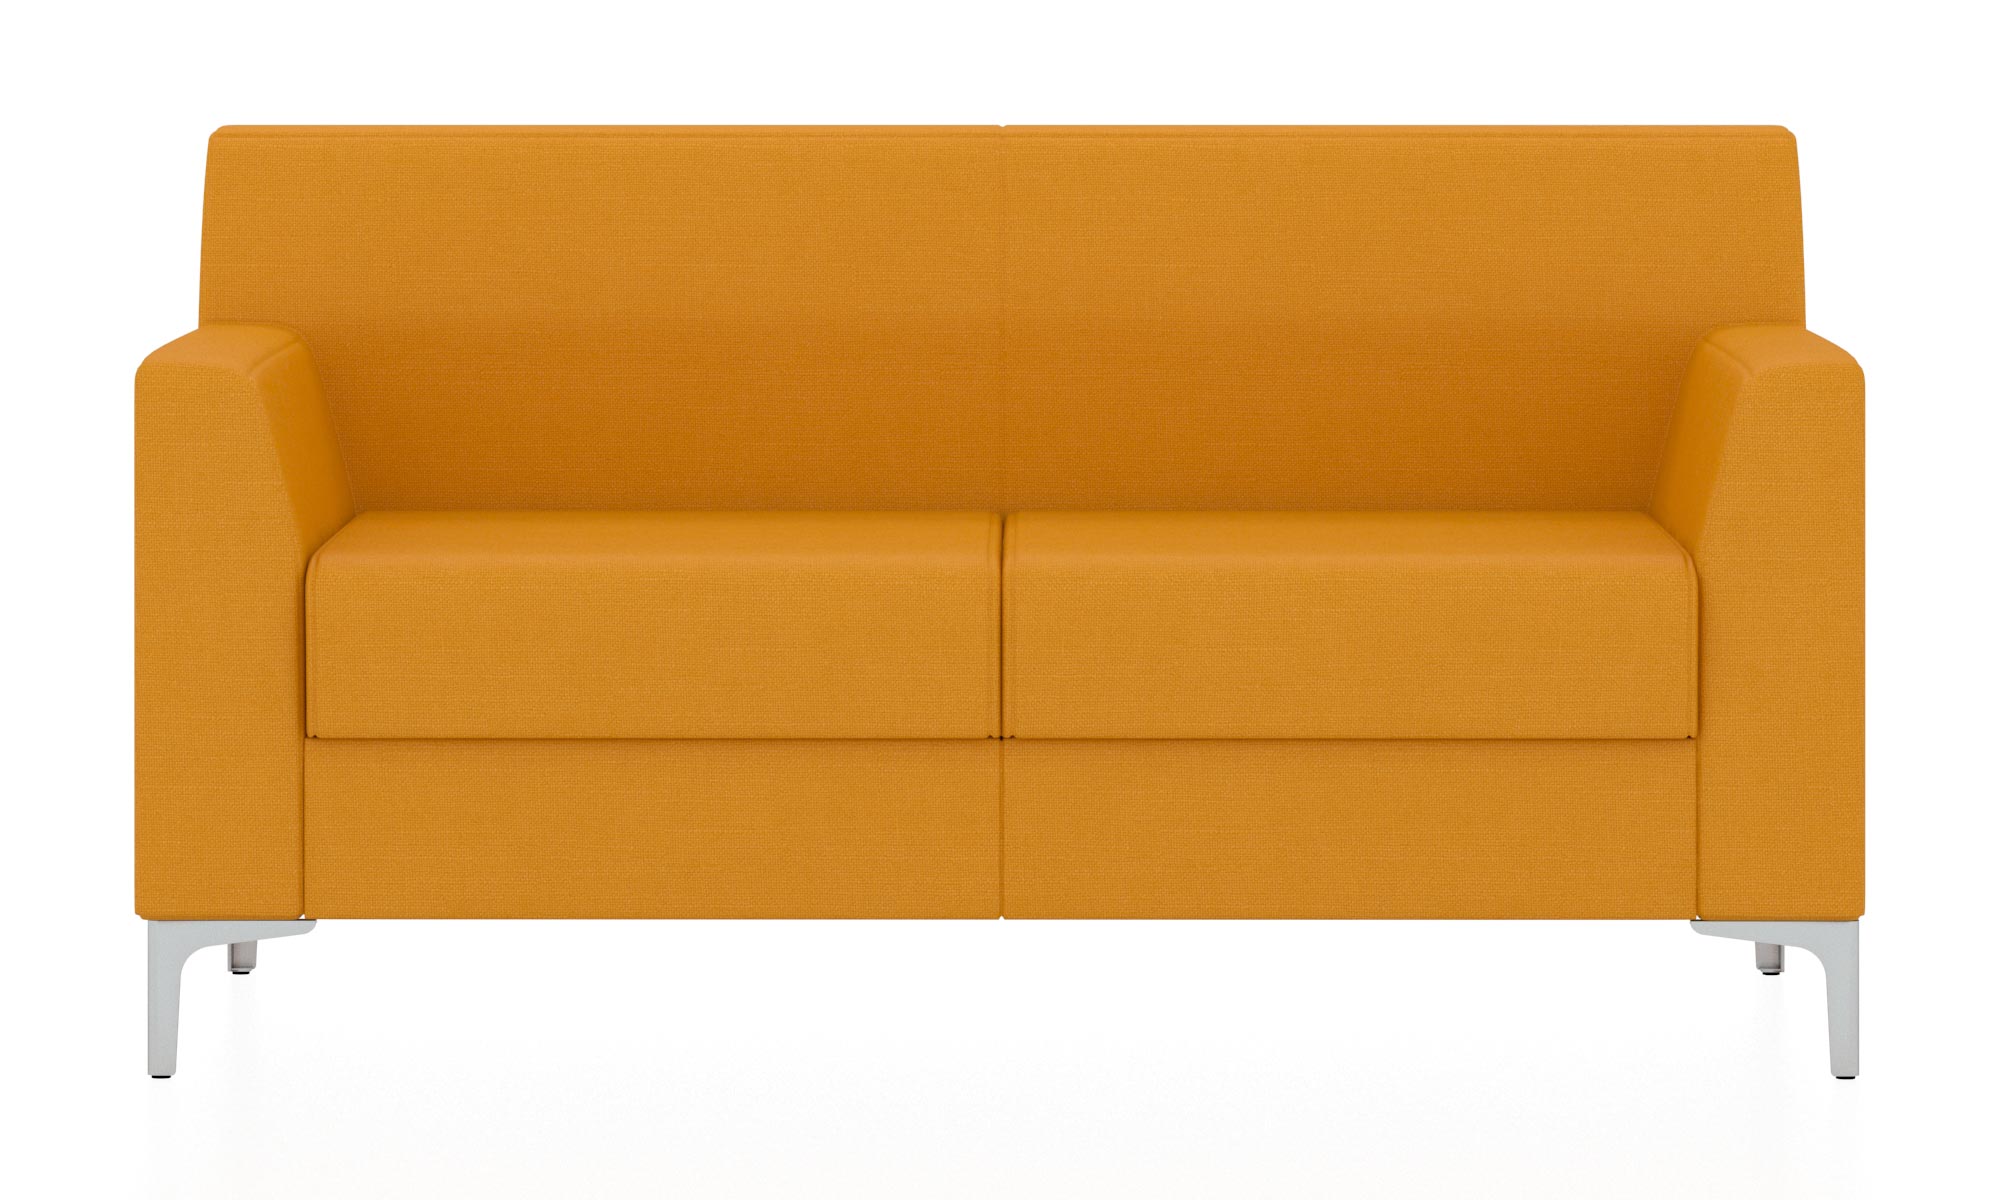 Классический двухместный диван. Обивка из ткани желтого цвета (Twist 10)